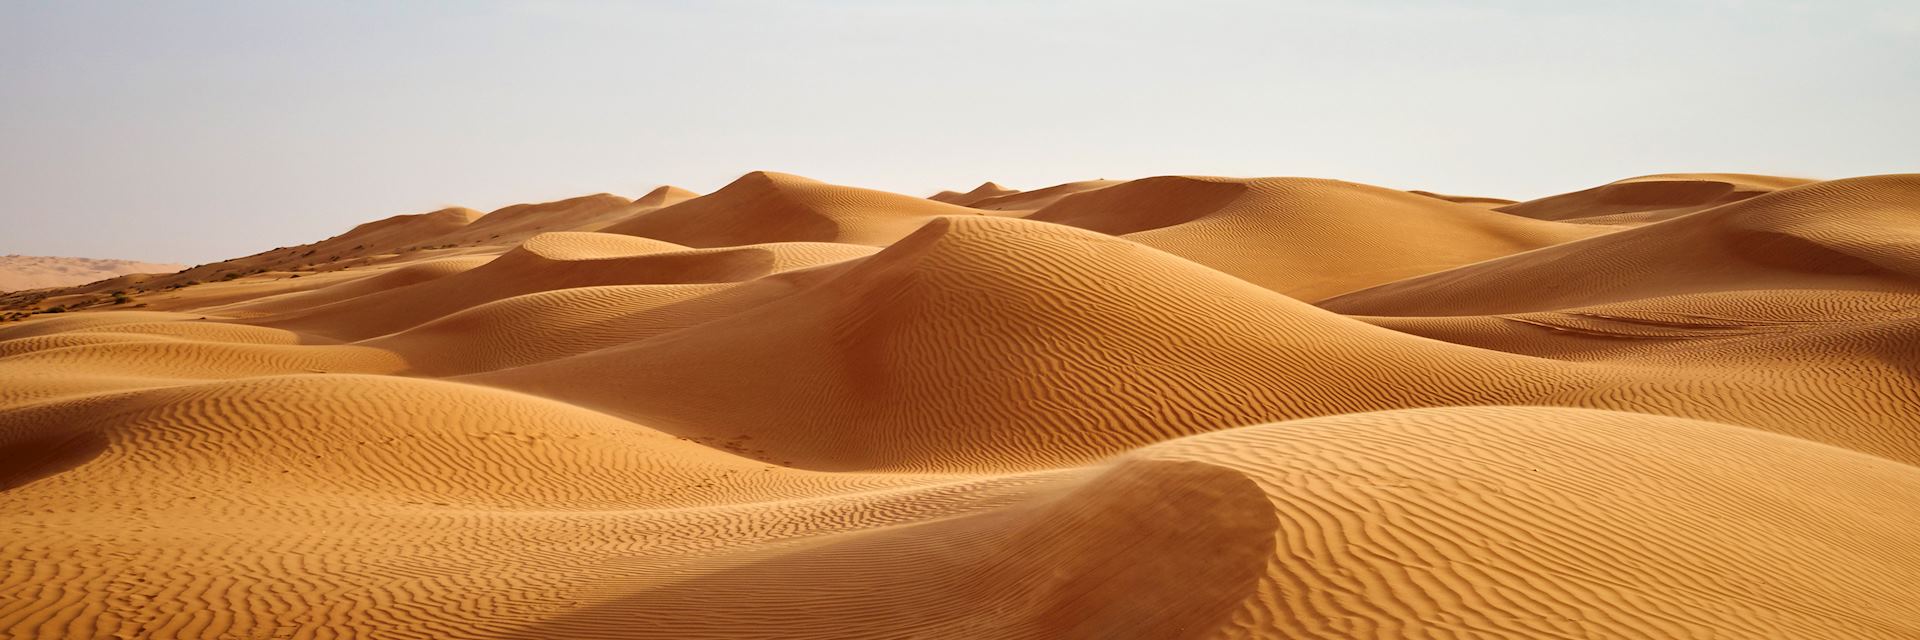 Desert dunes in Oman's Empty Quarter